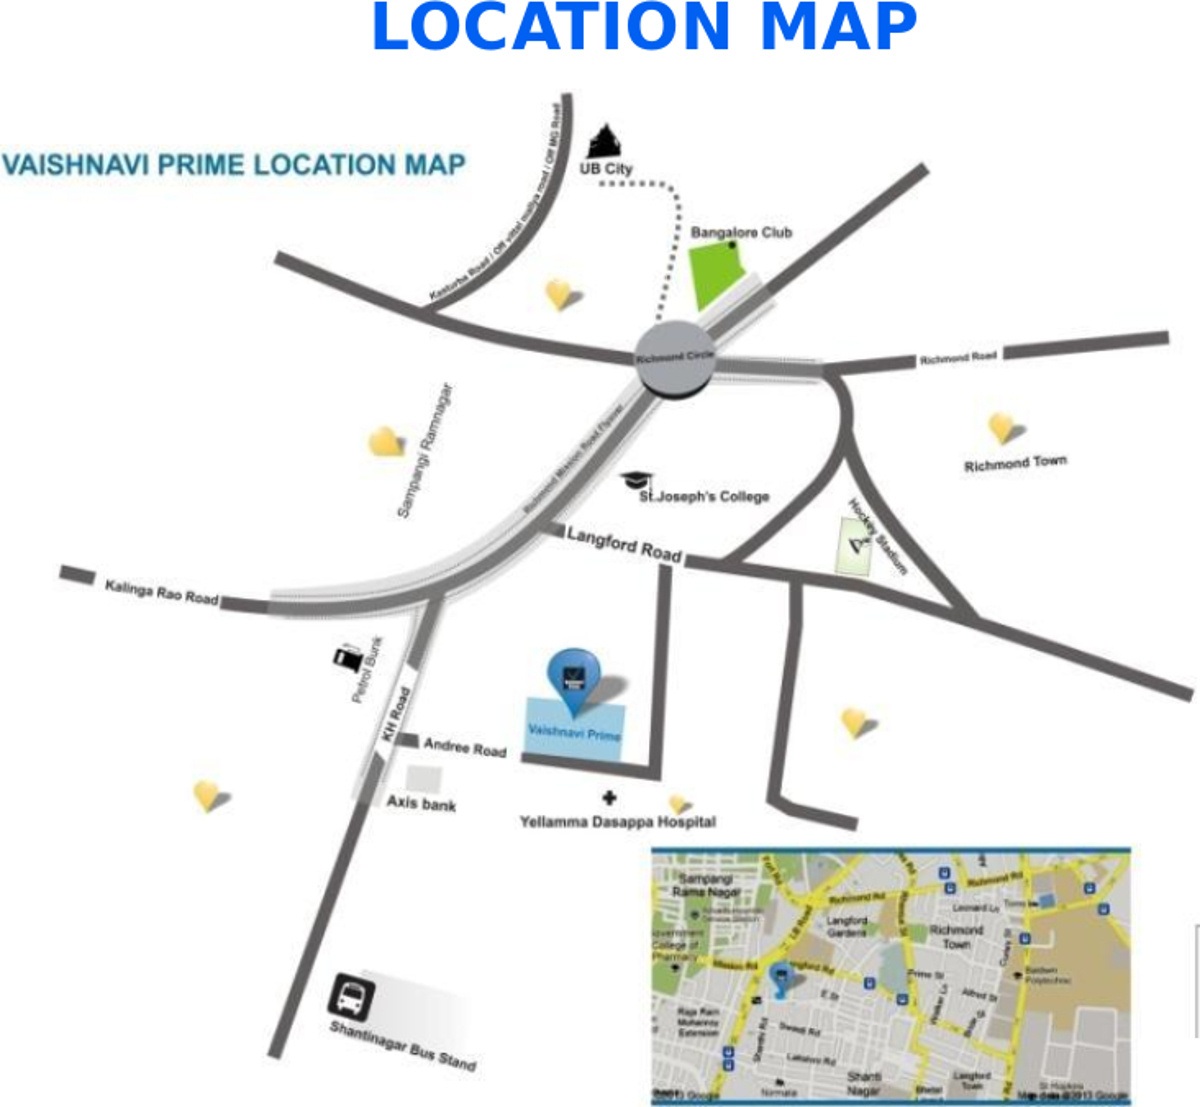 Vaishnavi Prime Location Map